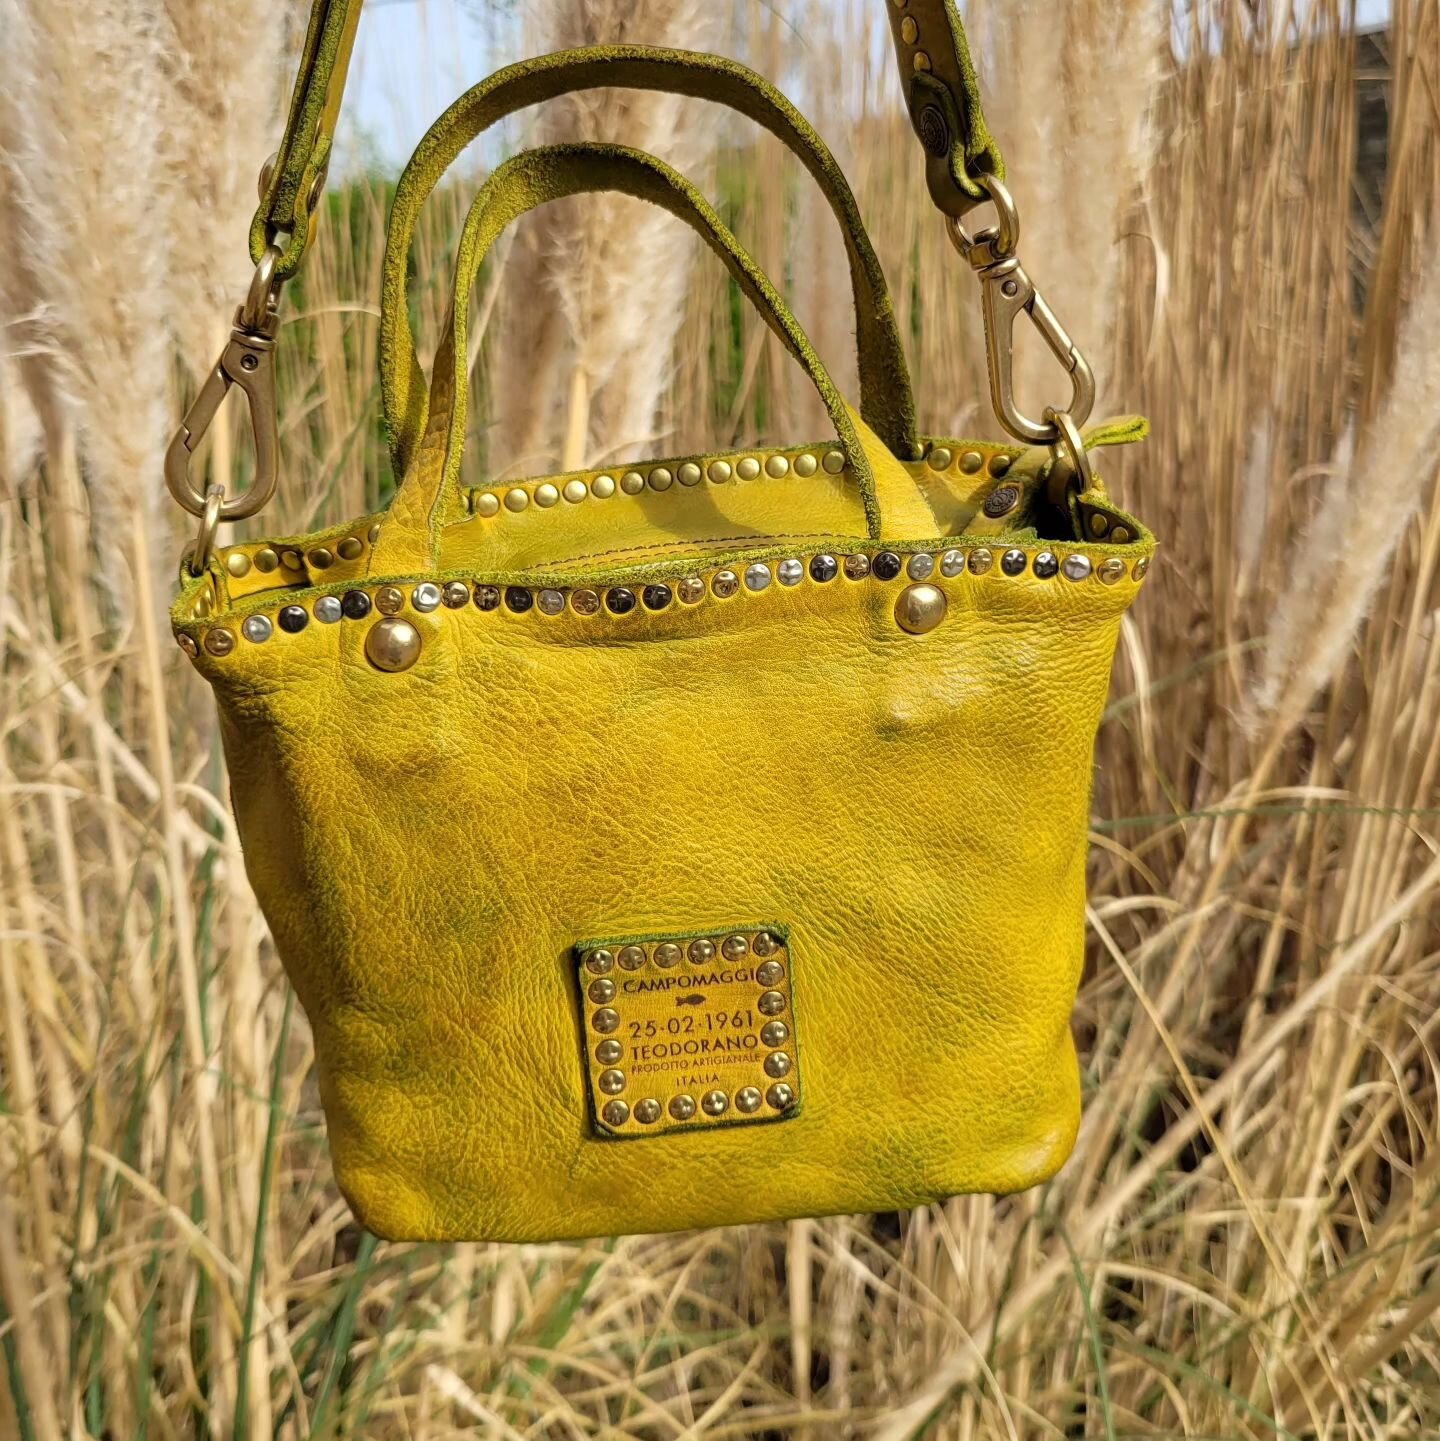 Nieuwe collectie Campomaggi in schitterend citron !
Je kunt deze tas ook cross body dragen! &euro;299.=